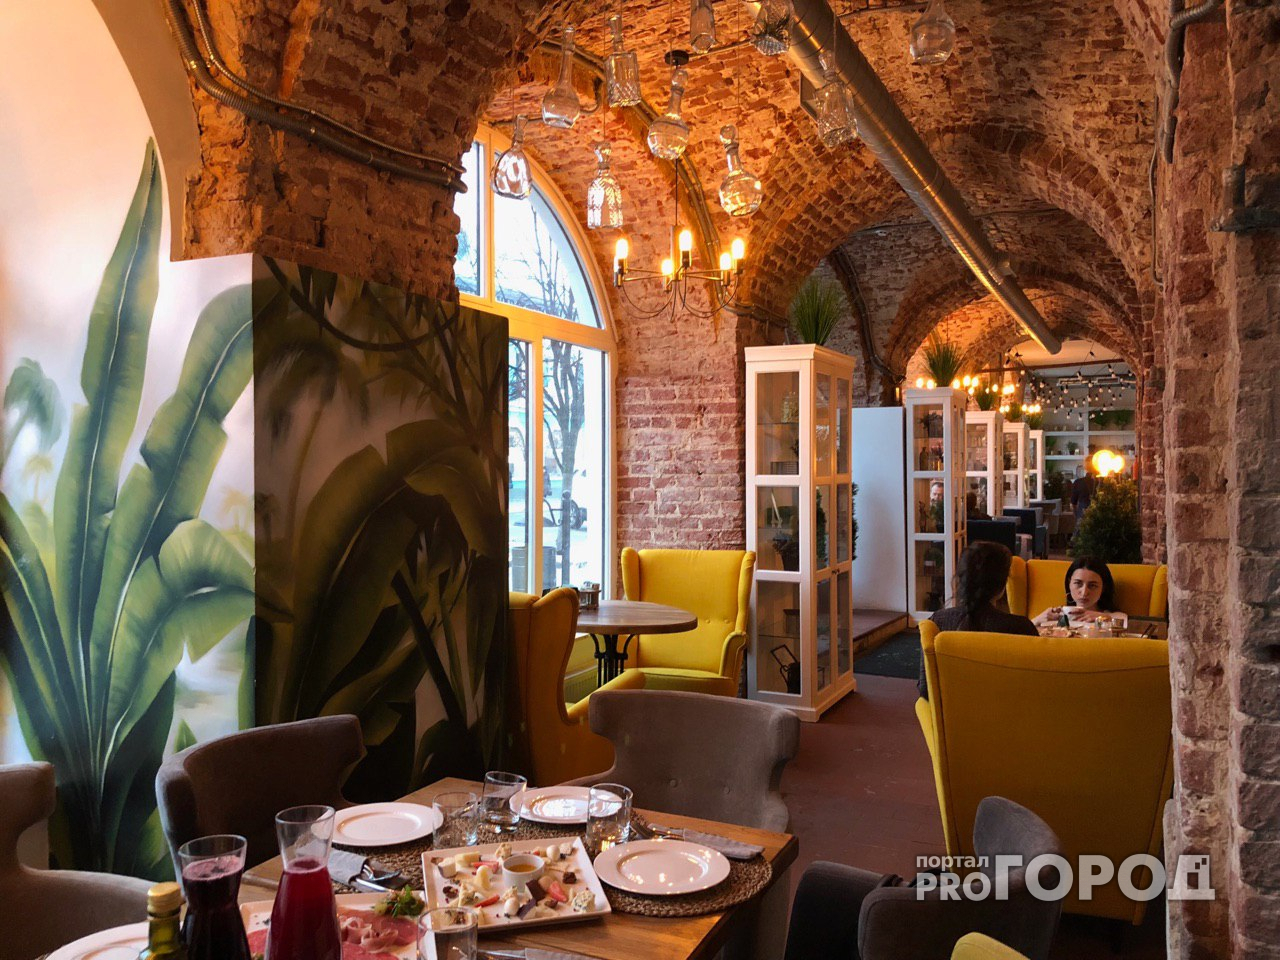 В Ярославле выбрали топ-5 лучших кафе и ресторанов